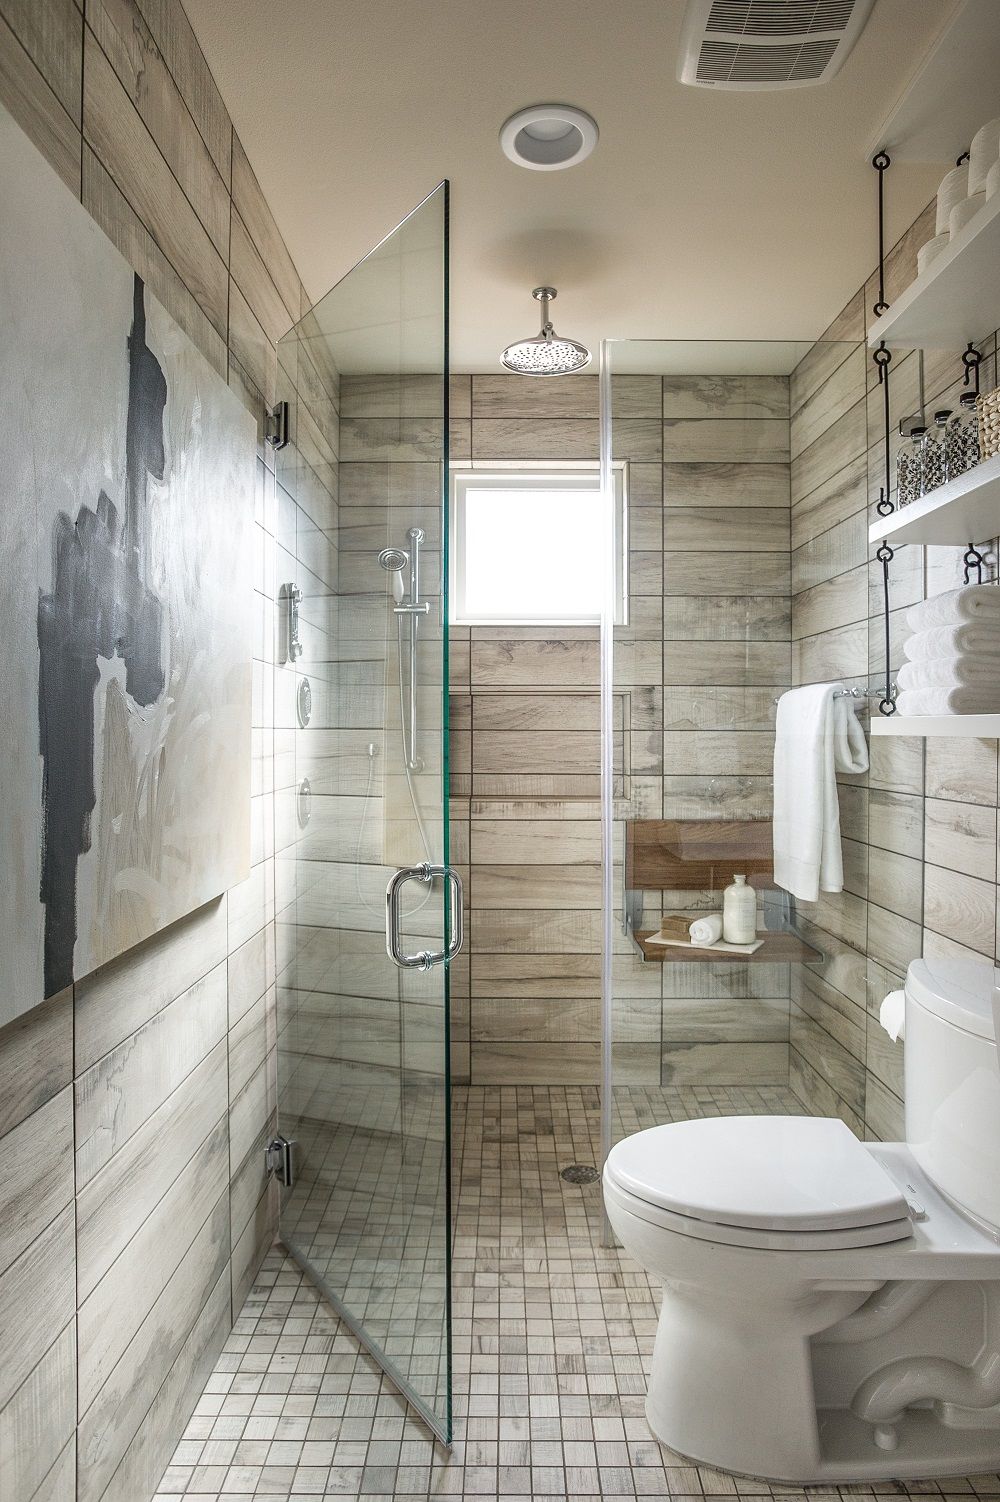 Nguyên tắc bố trí phòng tắm quan trọng giúp cho không gian này trở nên hợp lý và hiệu quả. Chúng tôi sẽ hướng dẫn bạn những nguyên tắc cơ bản của việc bố trí phòng tắm để tạo ra một không gian tắm lý tưởng.